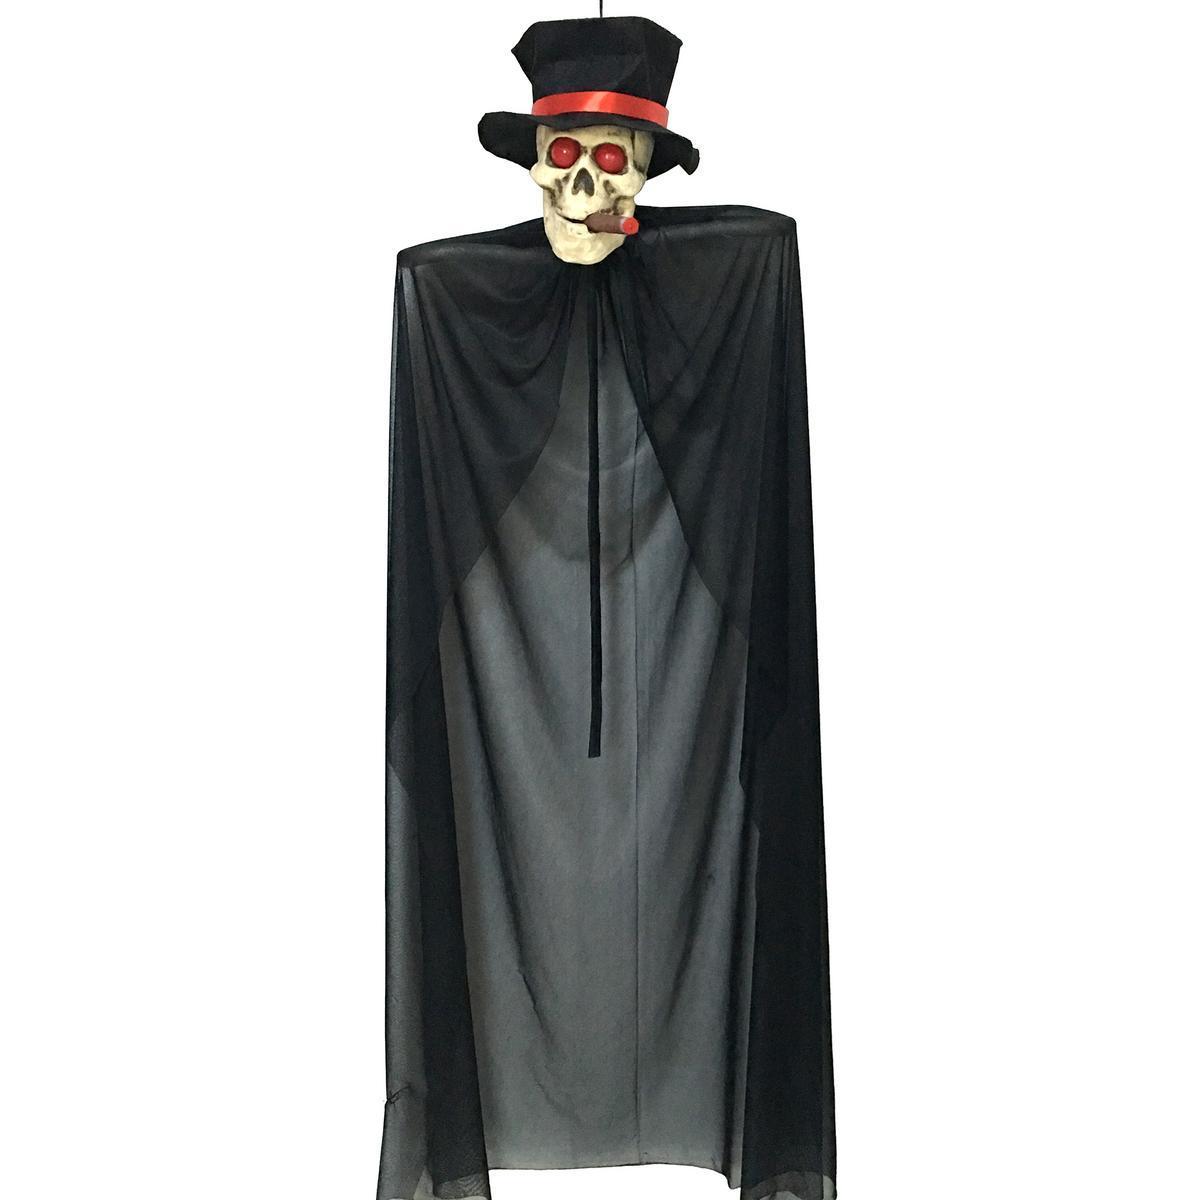 Suspensions tête de mort Halloween - Plastique et polyester - 44 x 25 x H 153 cm - Gris